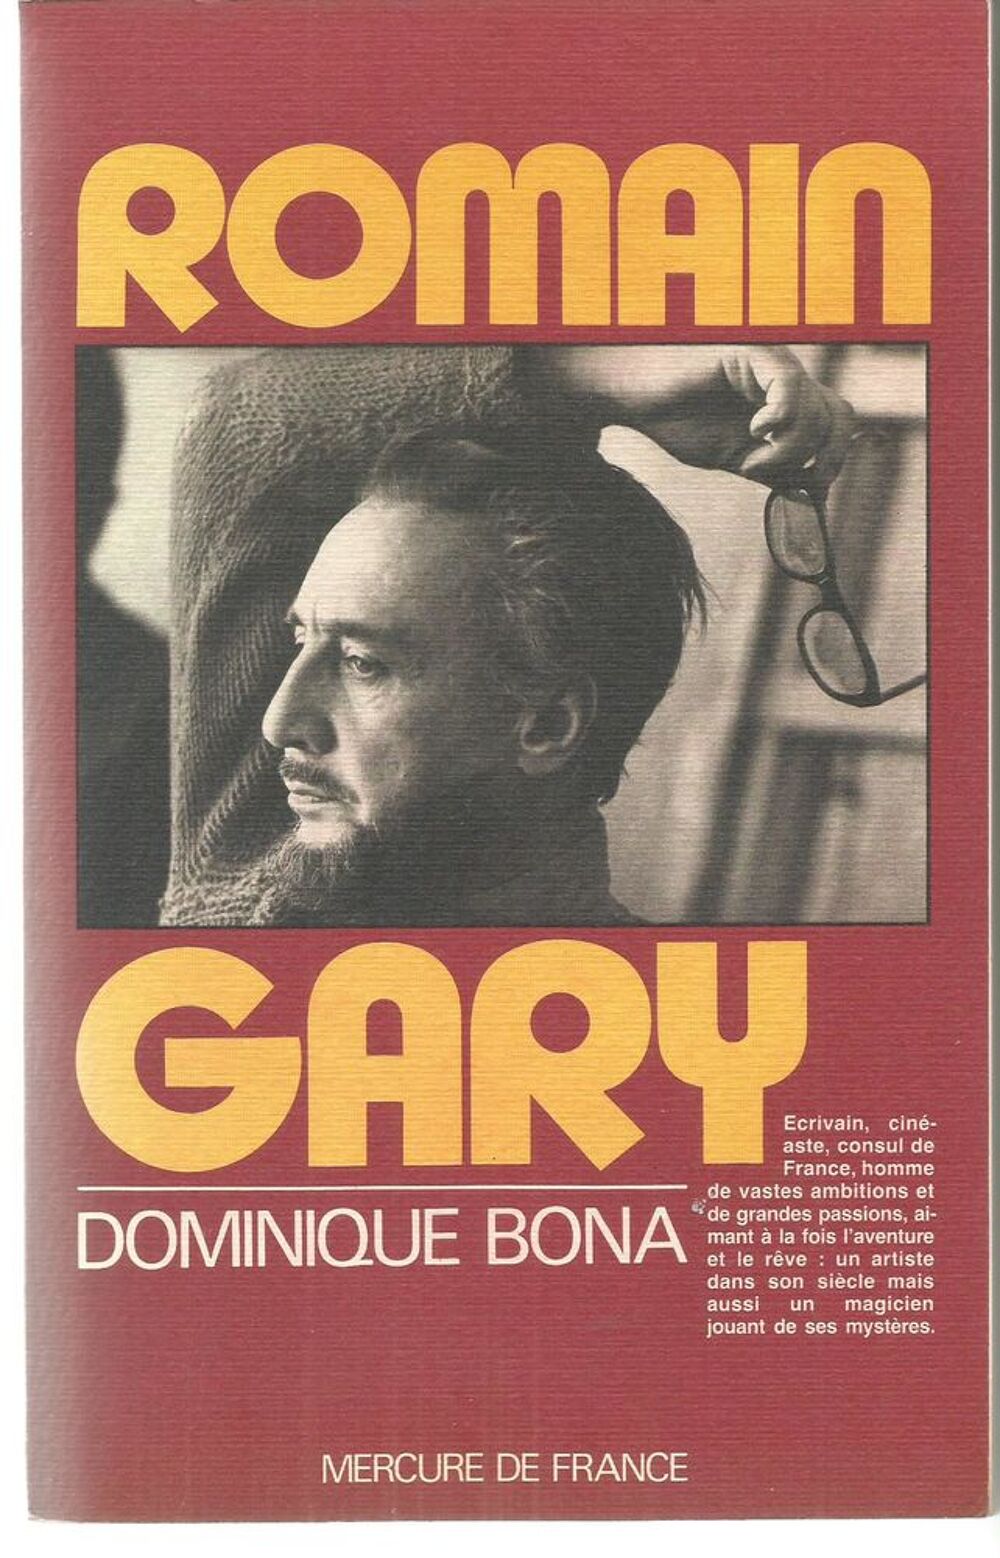 Romain GARY par Dominique BONA Livres et BD